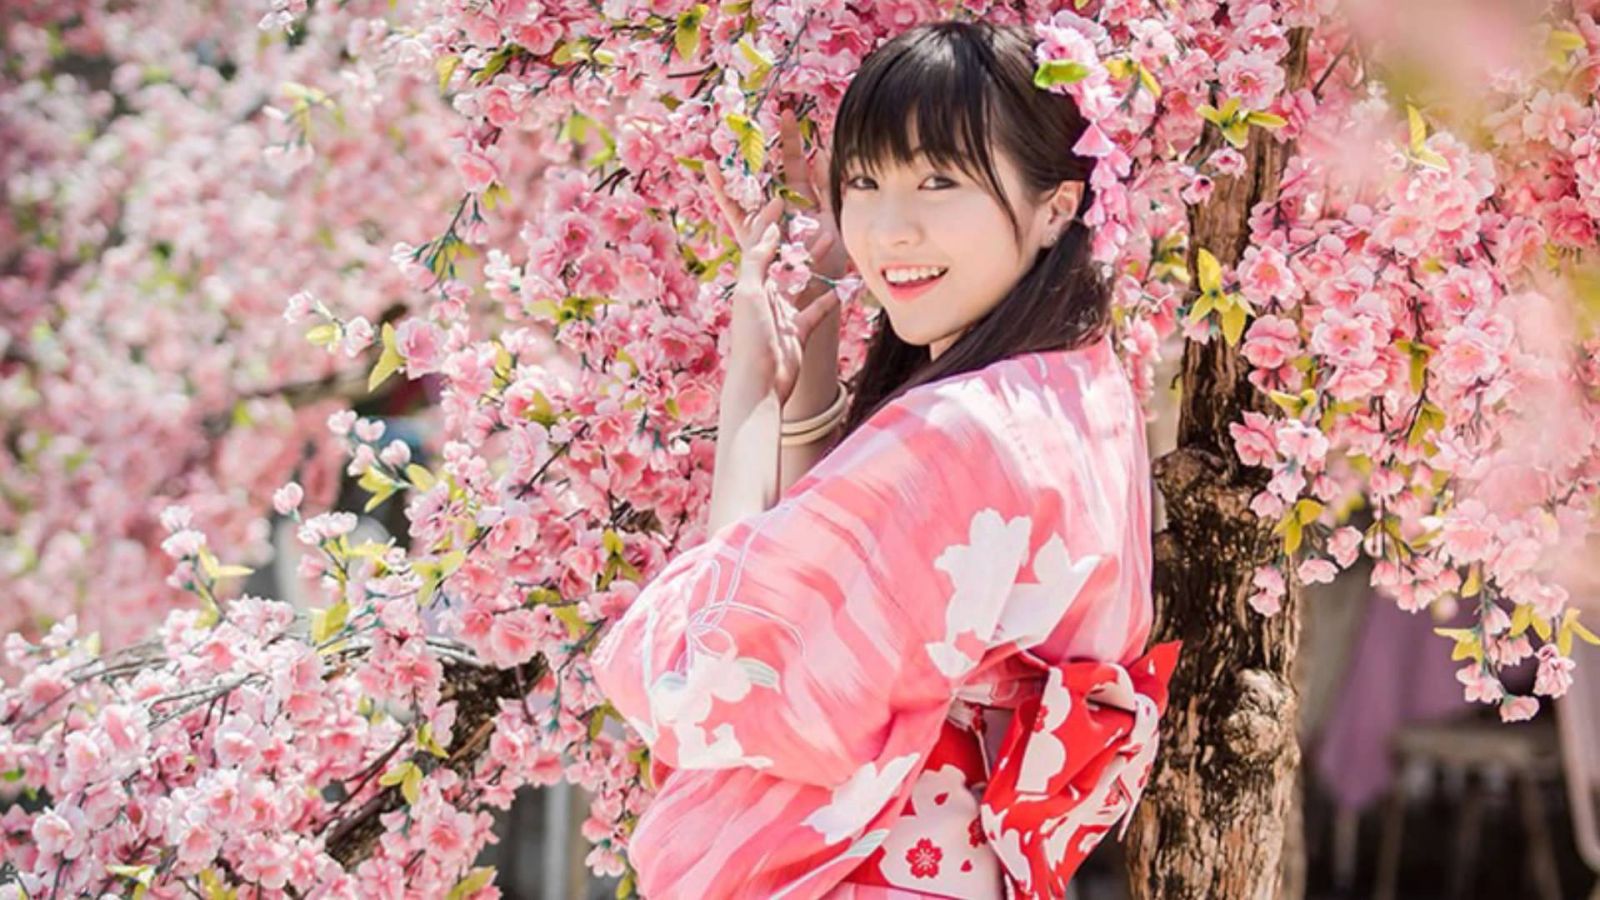 Du lịch Nhật Bản thưởng thức đặc sản bò Hida, Kobe, tham quan lễ hội ngắm hoa an